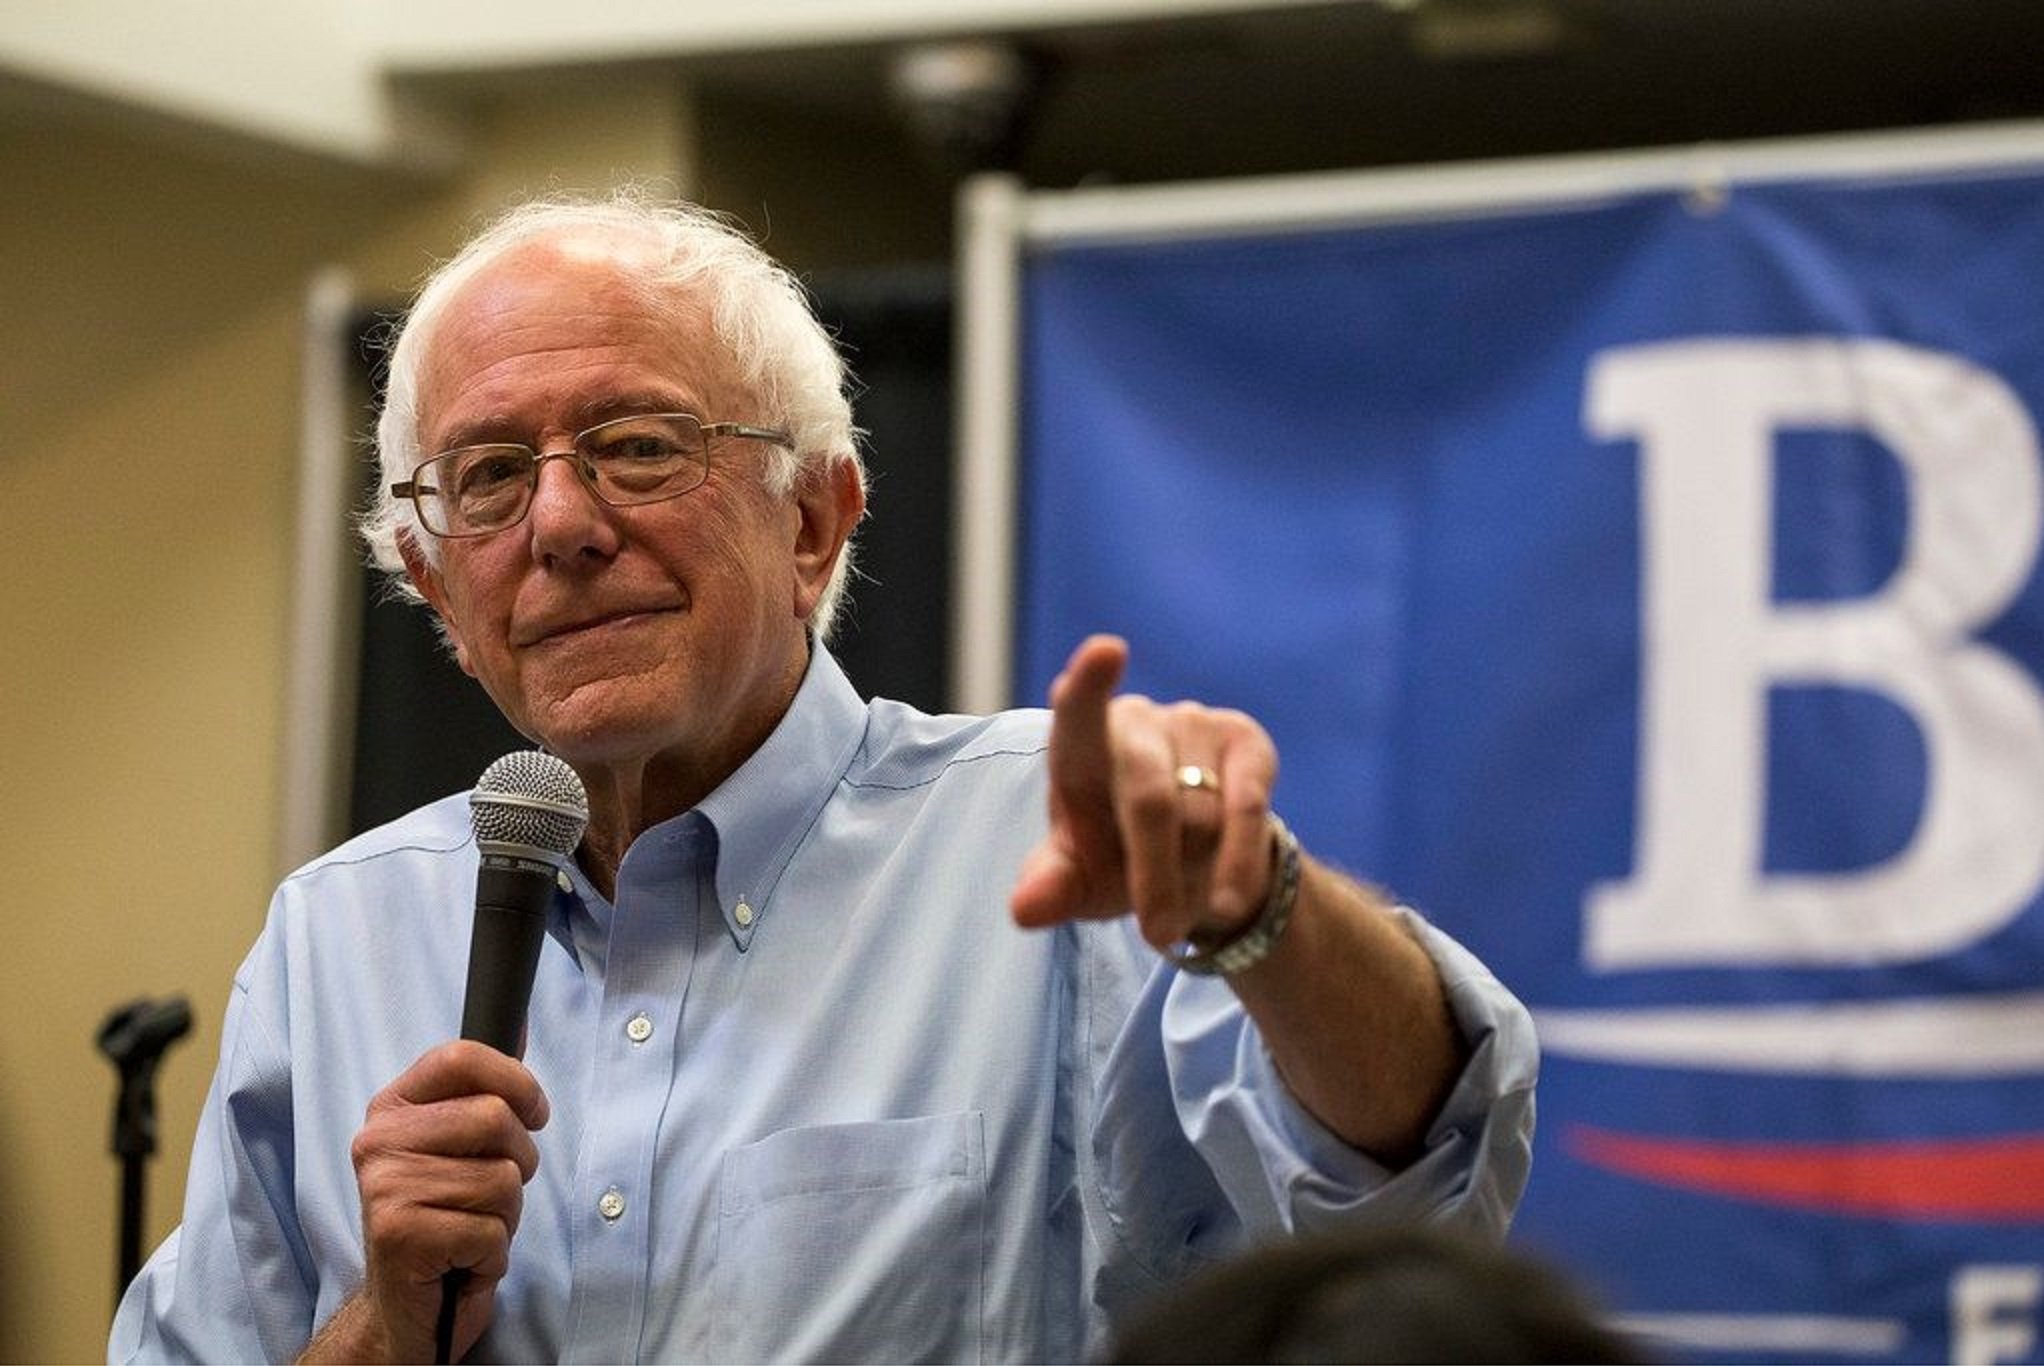 Sanders deja la carrera por la presidencia de los EE.UU: "Todos con Biden"